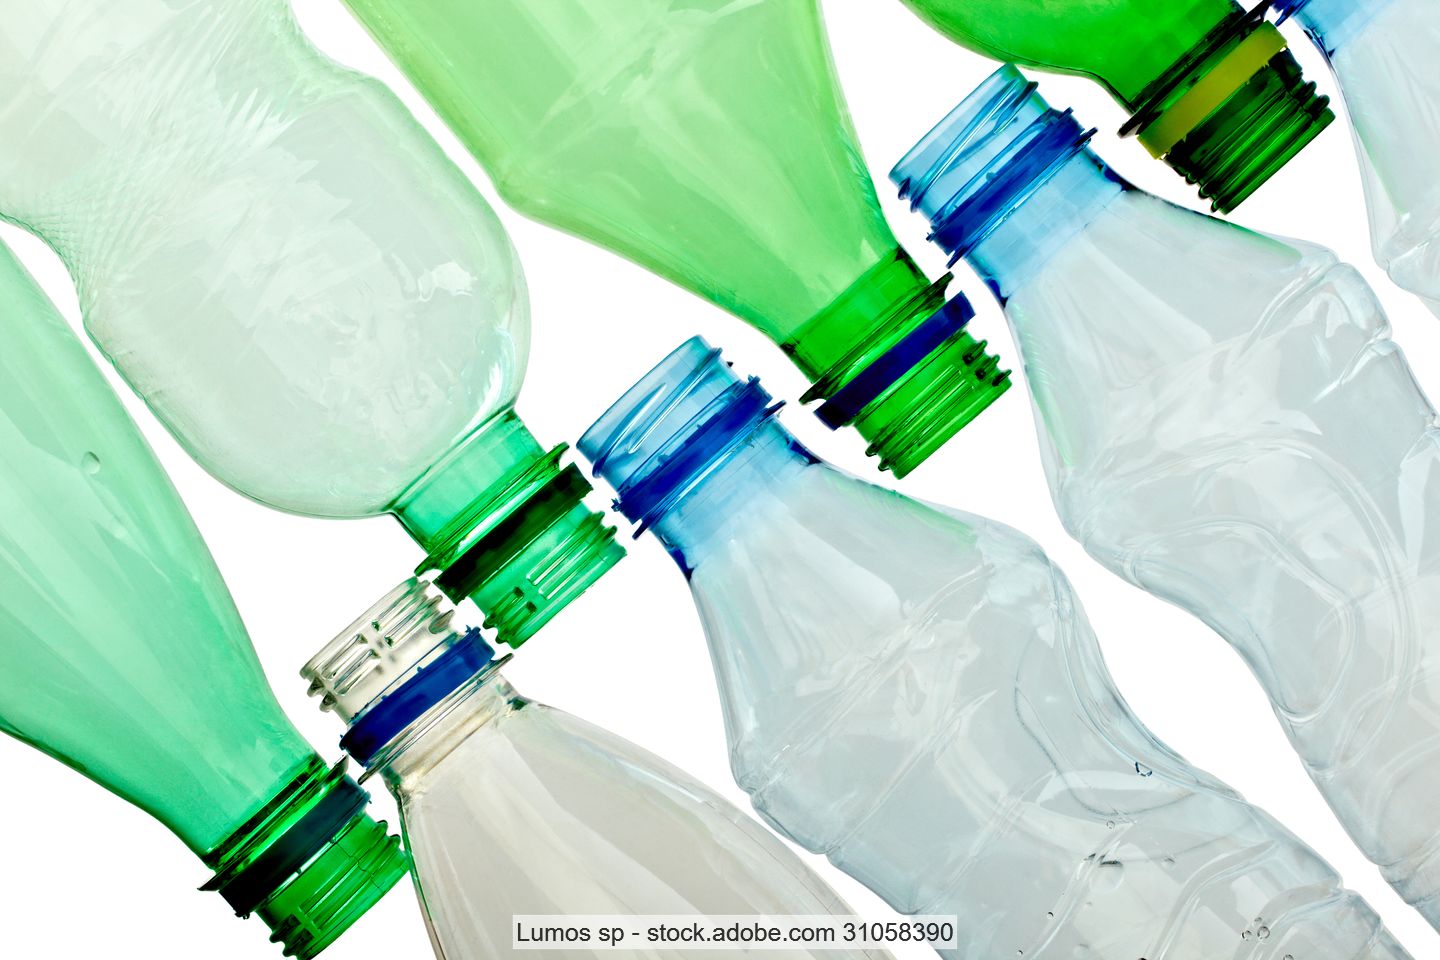 Aufgereihte PET-Flaschen ohne Verschluss in glasklar, bläulich und grün.